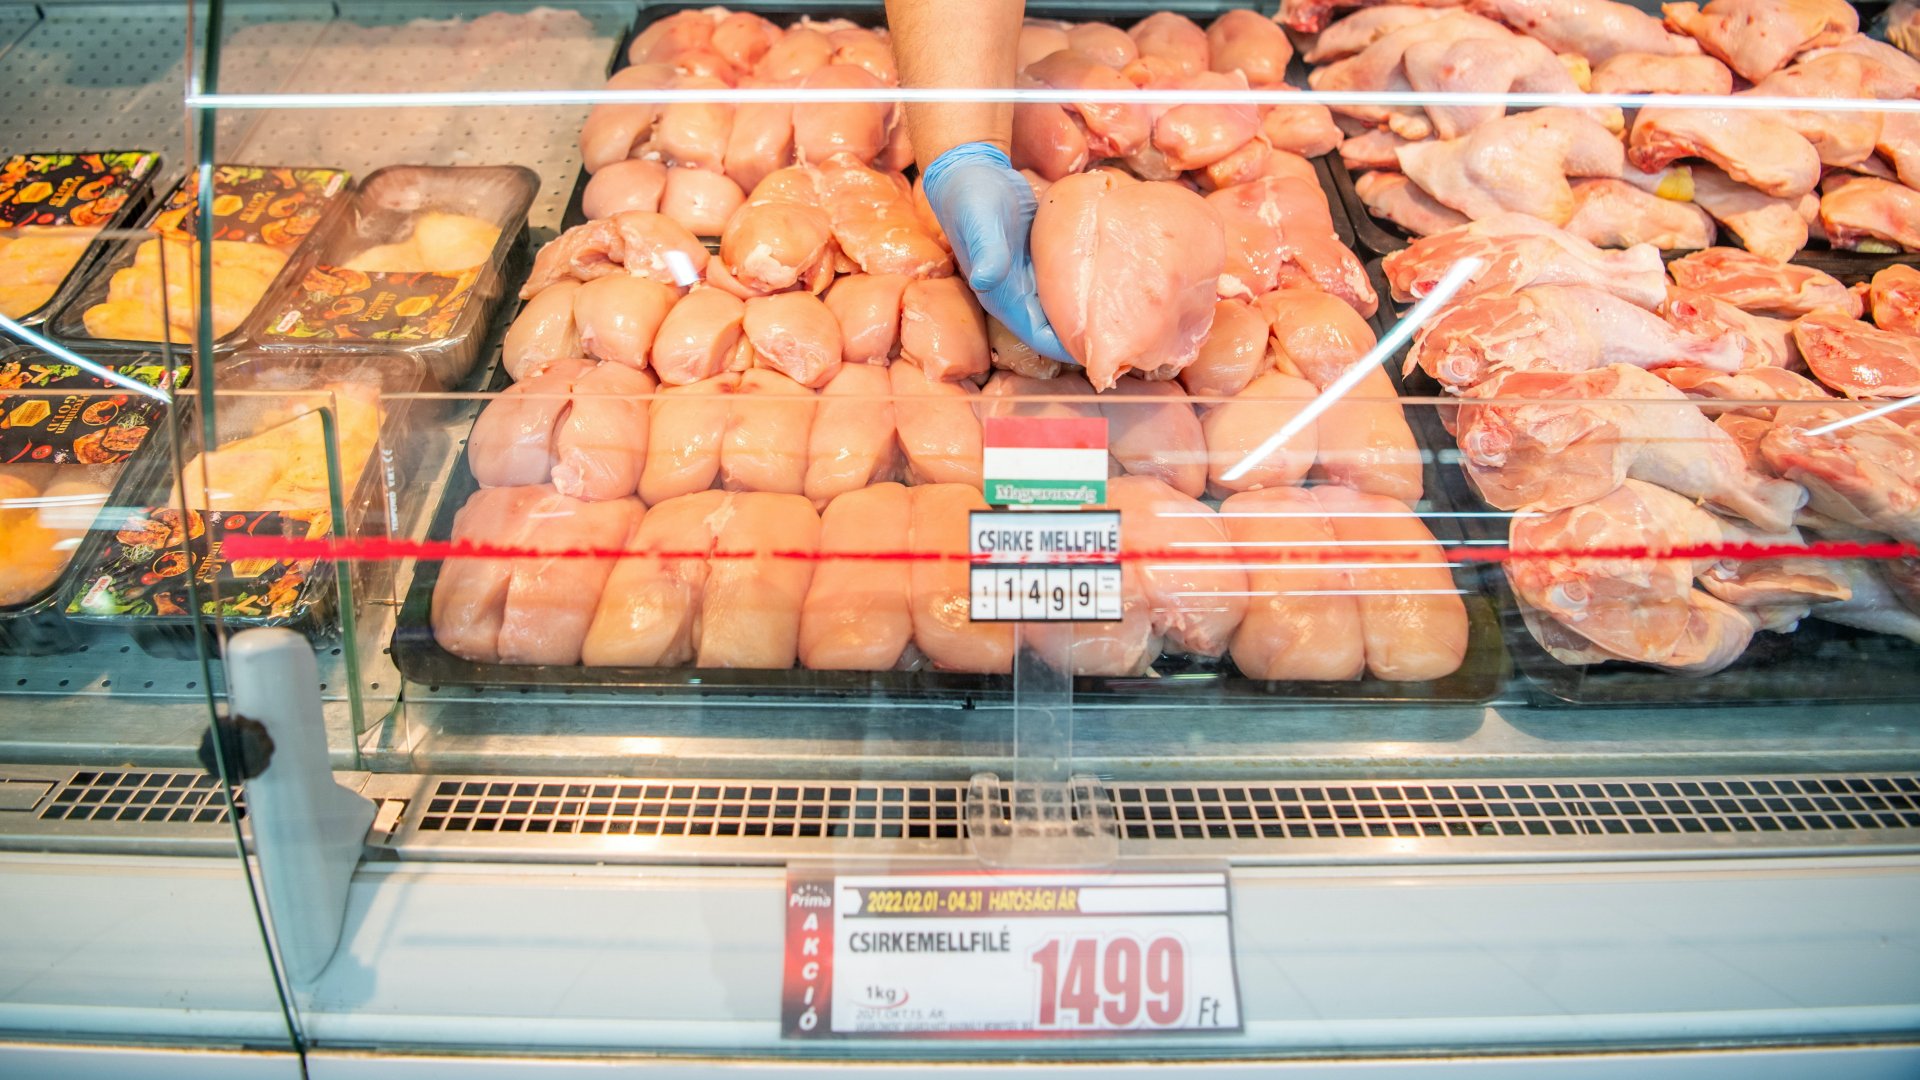 Hatósági áras csirkemell a fõvárosi Corvin Plazában található Príma üzletben 2022. február 1-jén